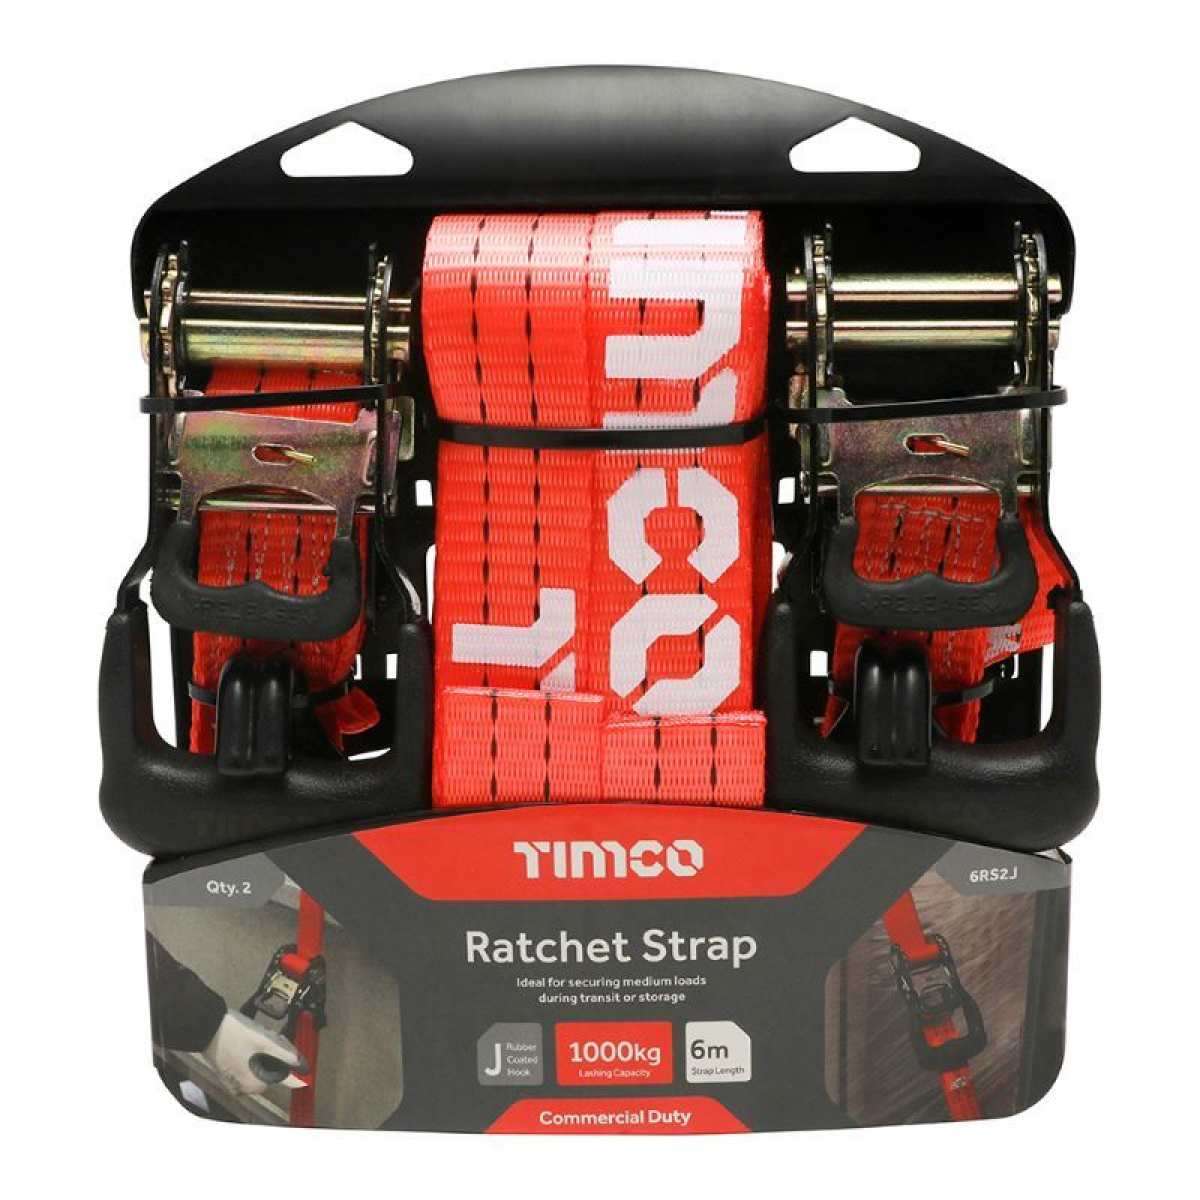 Ratchet Straps - Commercial Duty